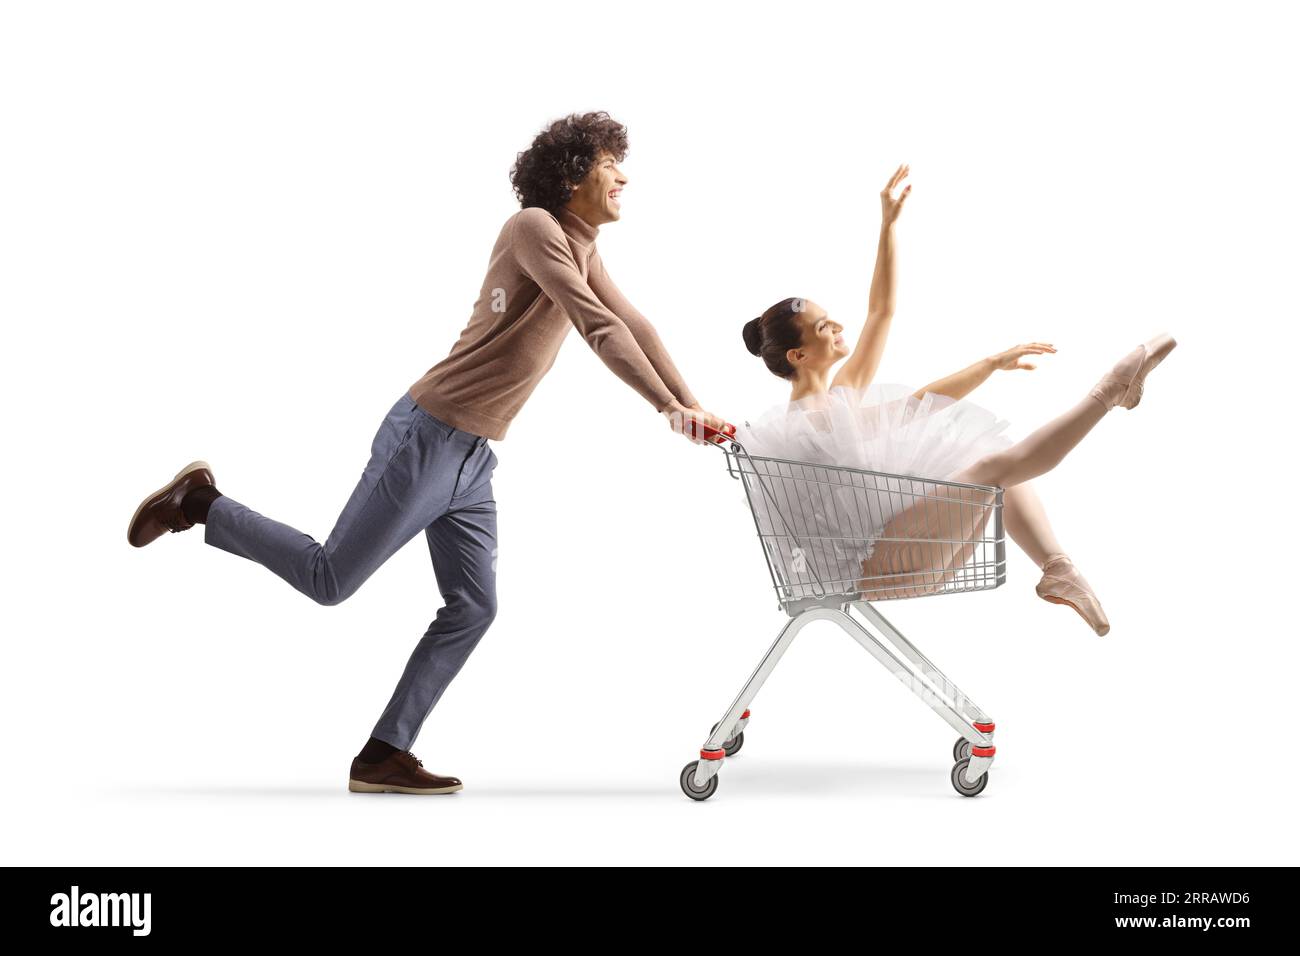 Junger Mann läuft und schiebt eine Ballerina in einen Einkaufswagen, isoliert auf weißem Hintergrund Stockfoto